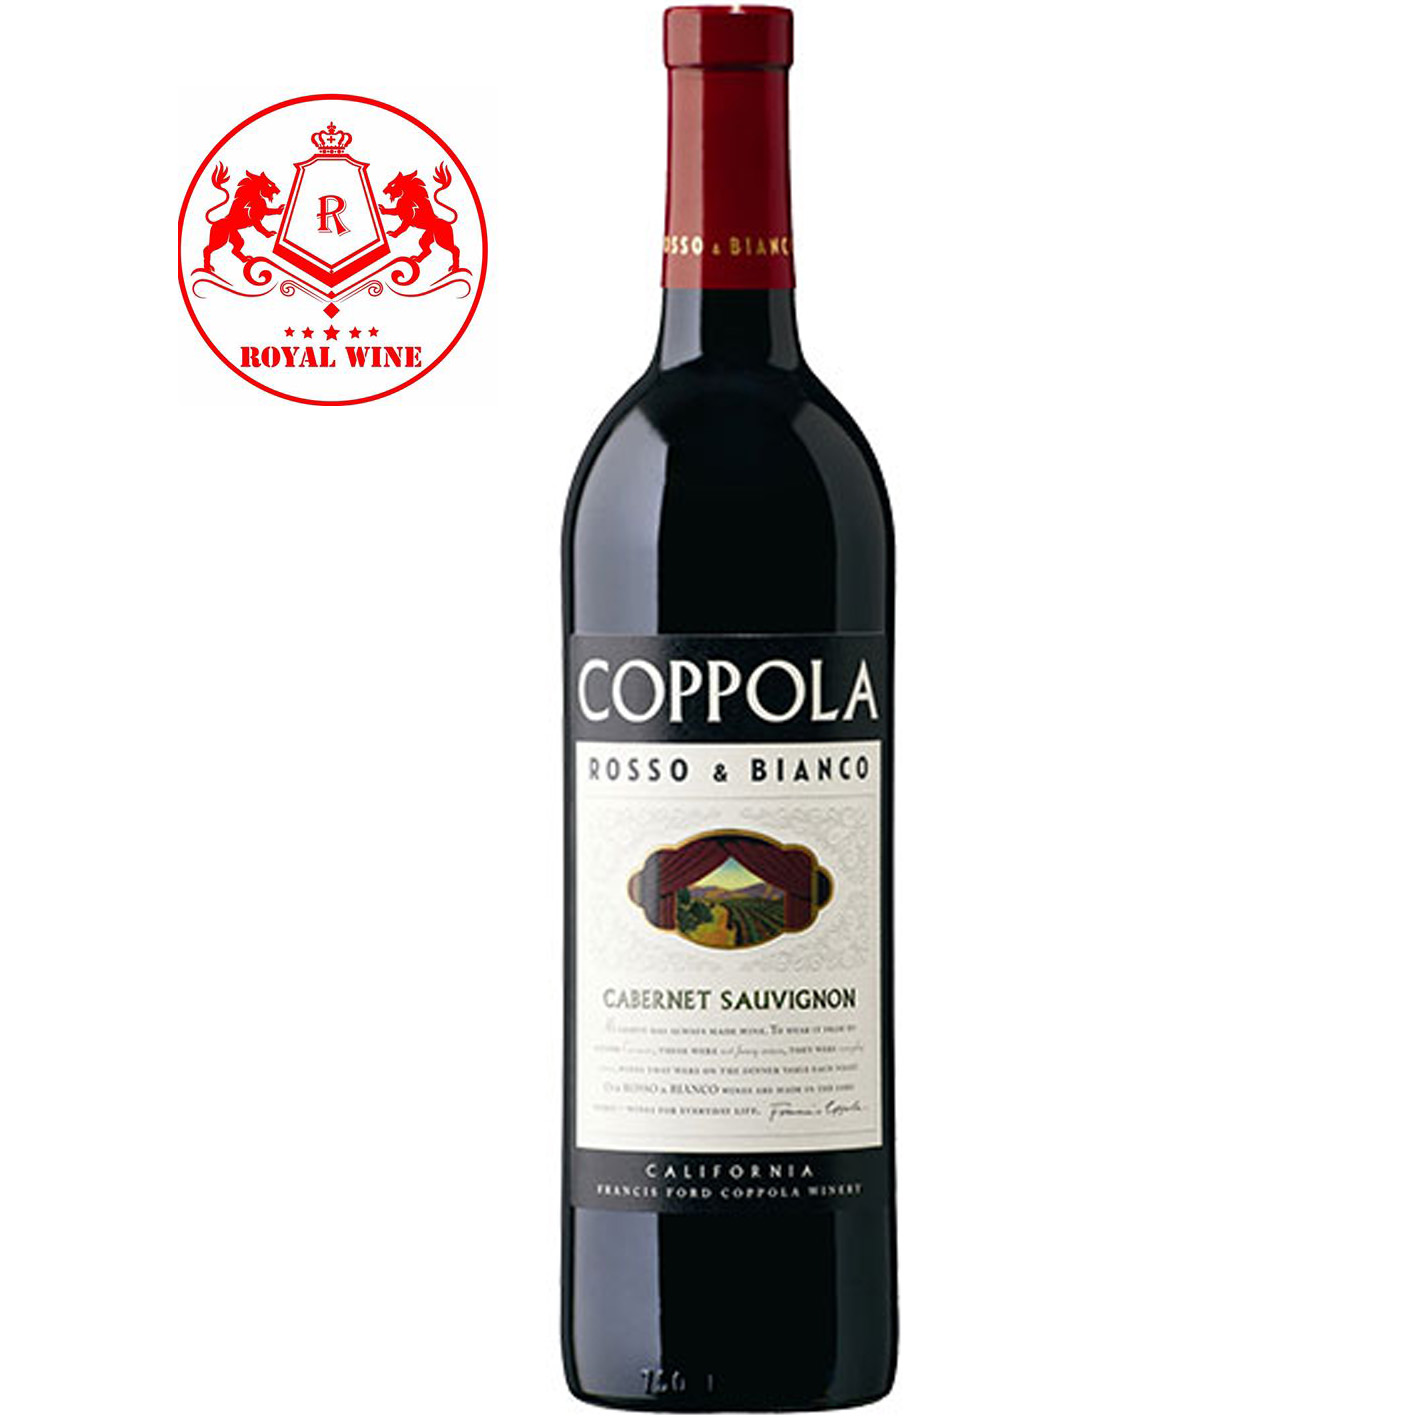 COPPOLA Rosso & Bianco Cabernet Sauvignon